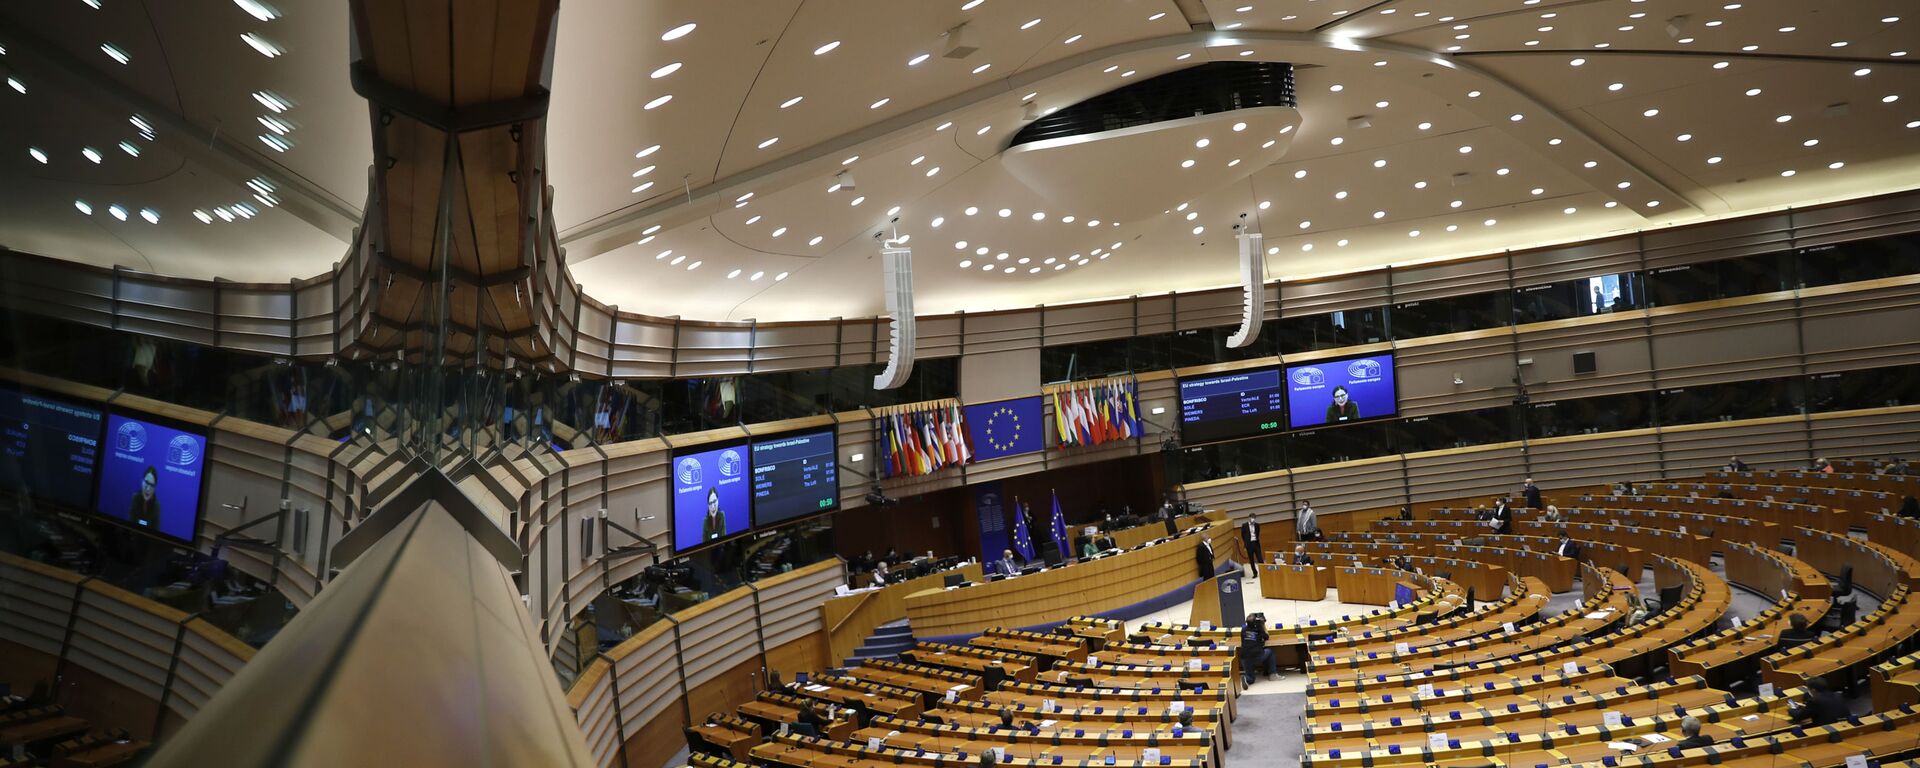 Заседање Европског парламента у Бриселу - Sputnik Србија, 1920, 09.06.2021